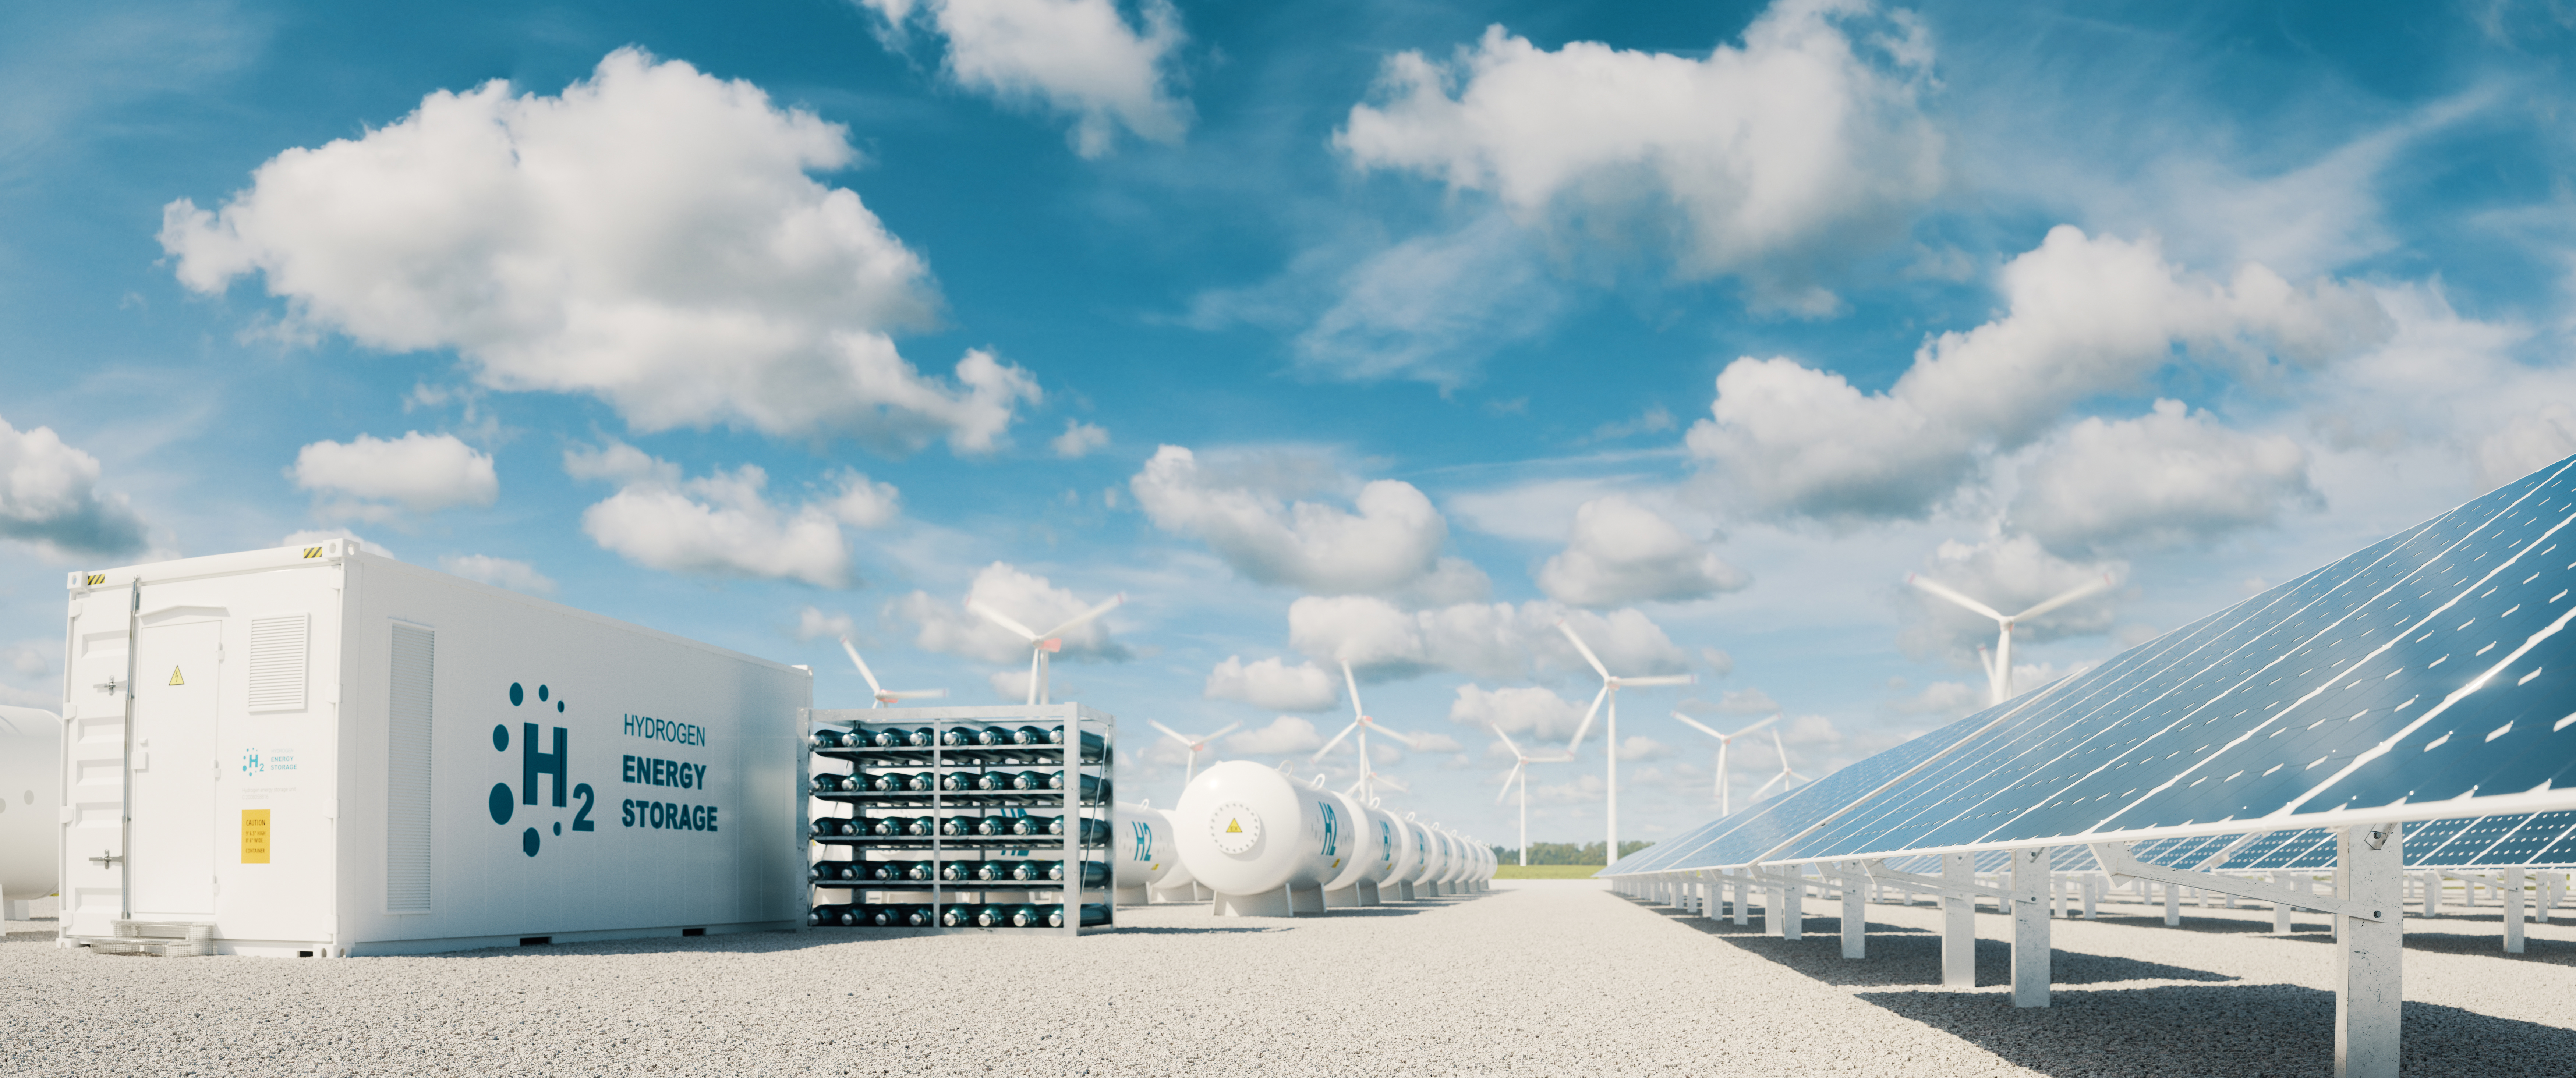 Foto på solpaneler, vindkraftverk och ett vätgaslager